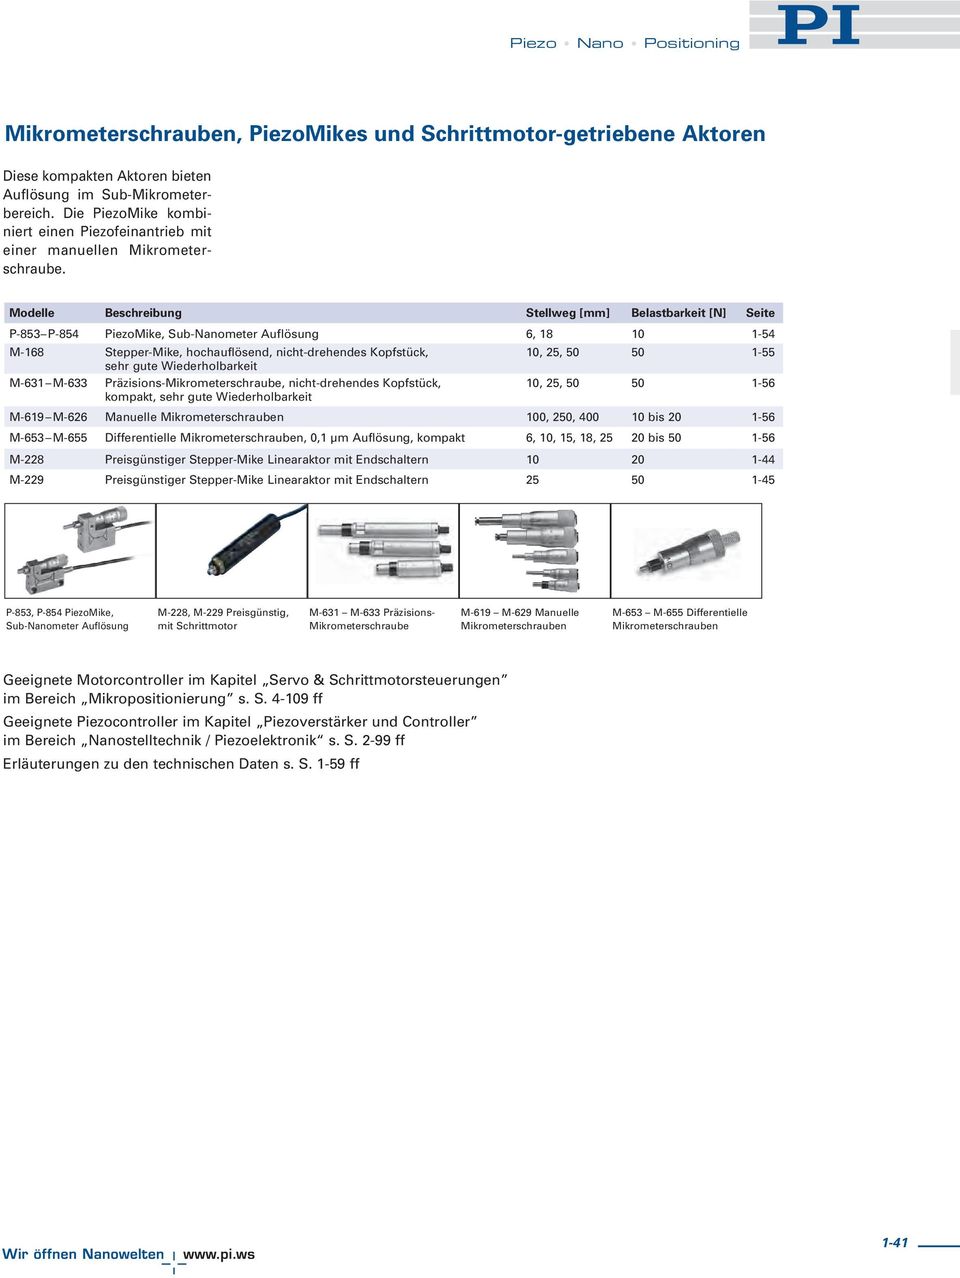 Modelle Beschreibung Stellweg [mm] Belastbarkeit [N] Seite P-853 P-854 PiezoMike, Sub-Nanometer Auflösung 6, 18 10 1-54 M-168 Stepper-Mike, hochauflösend, nicht-drehendes Kopfstück, 10, 25, 50 50